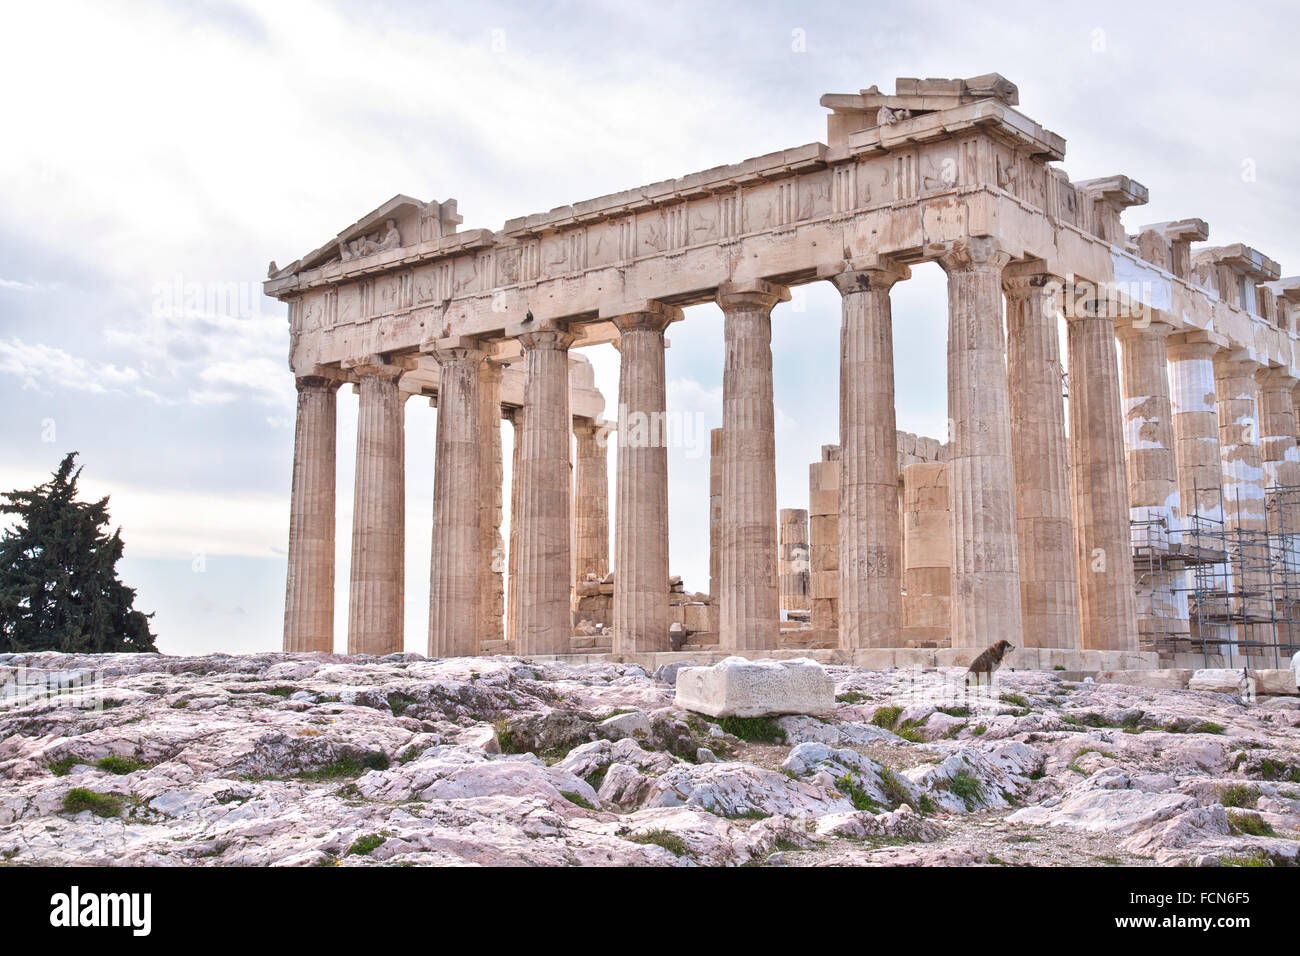 El Partenón es un antiguo templo en la Acrópolis de Atenas, Grecia. Foto de stock